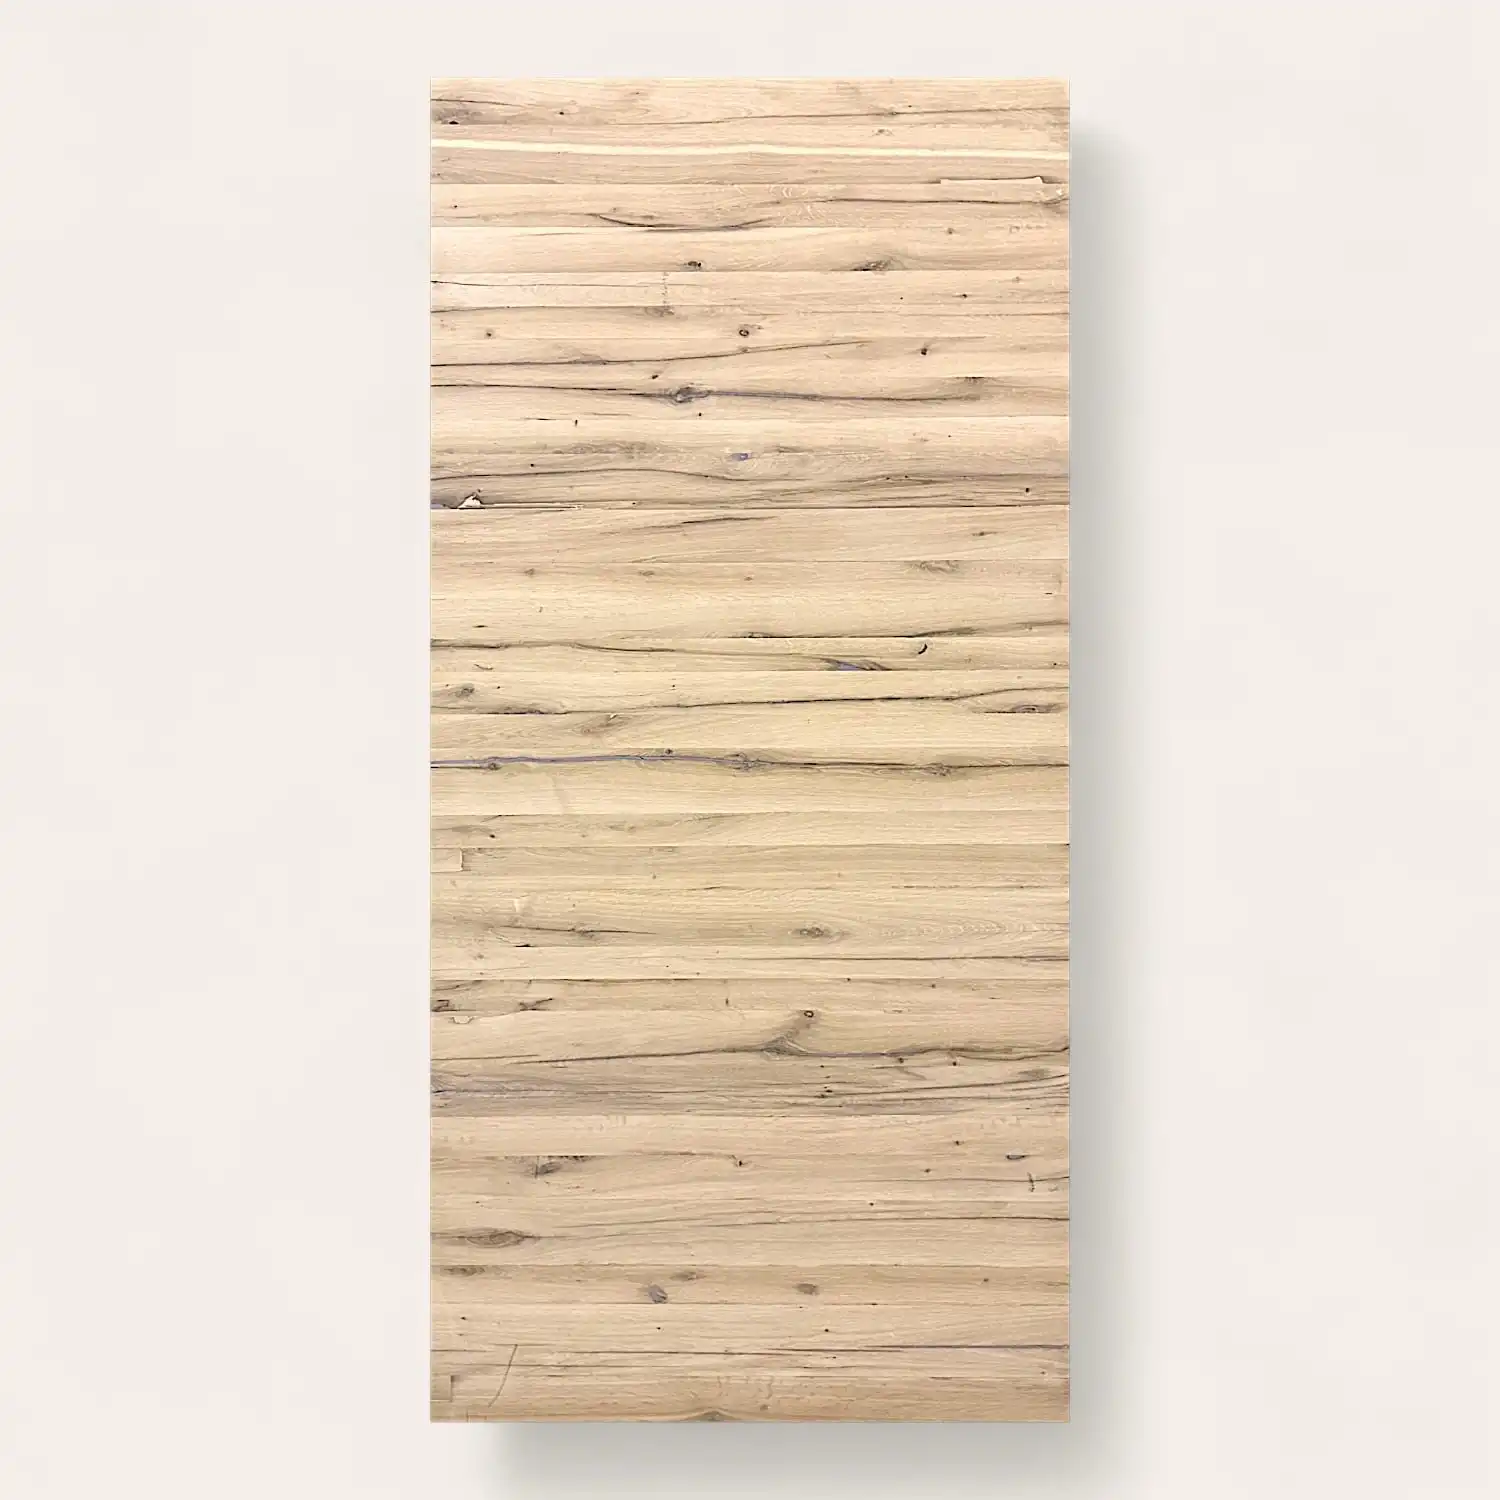  Une planche rectangulaire de bois aux tons clairs avec des motifs et des textures de grain naturel, classée panneau 5 plis. 